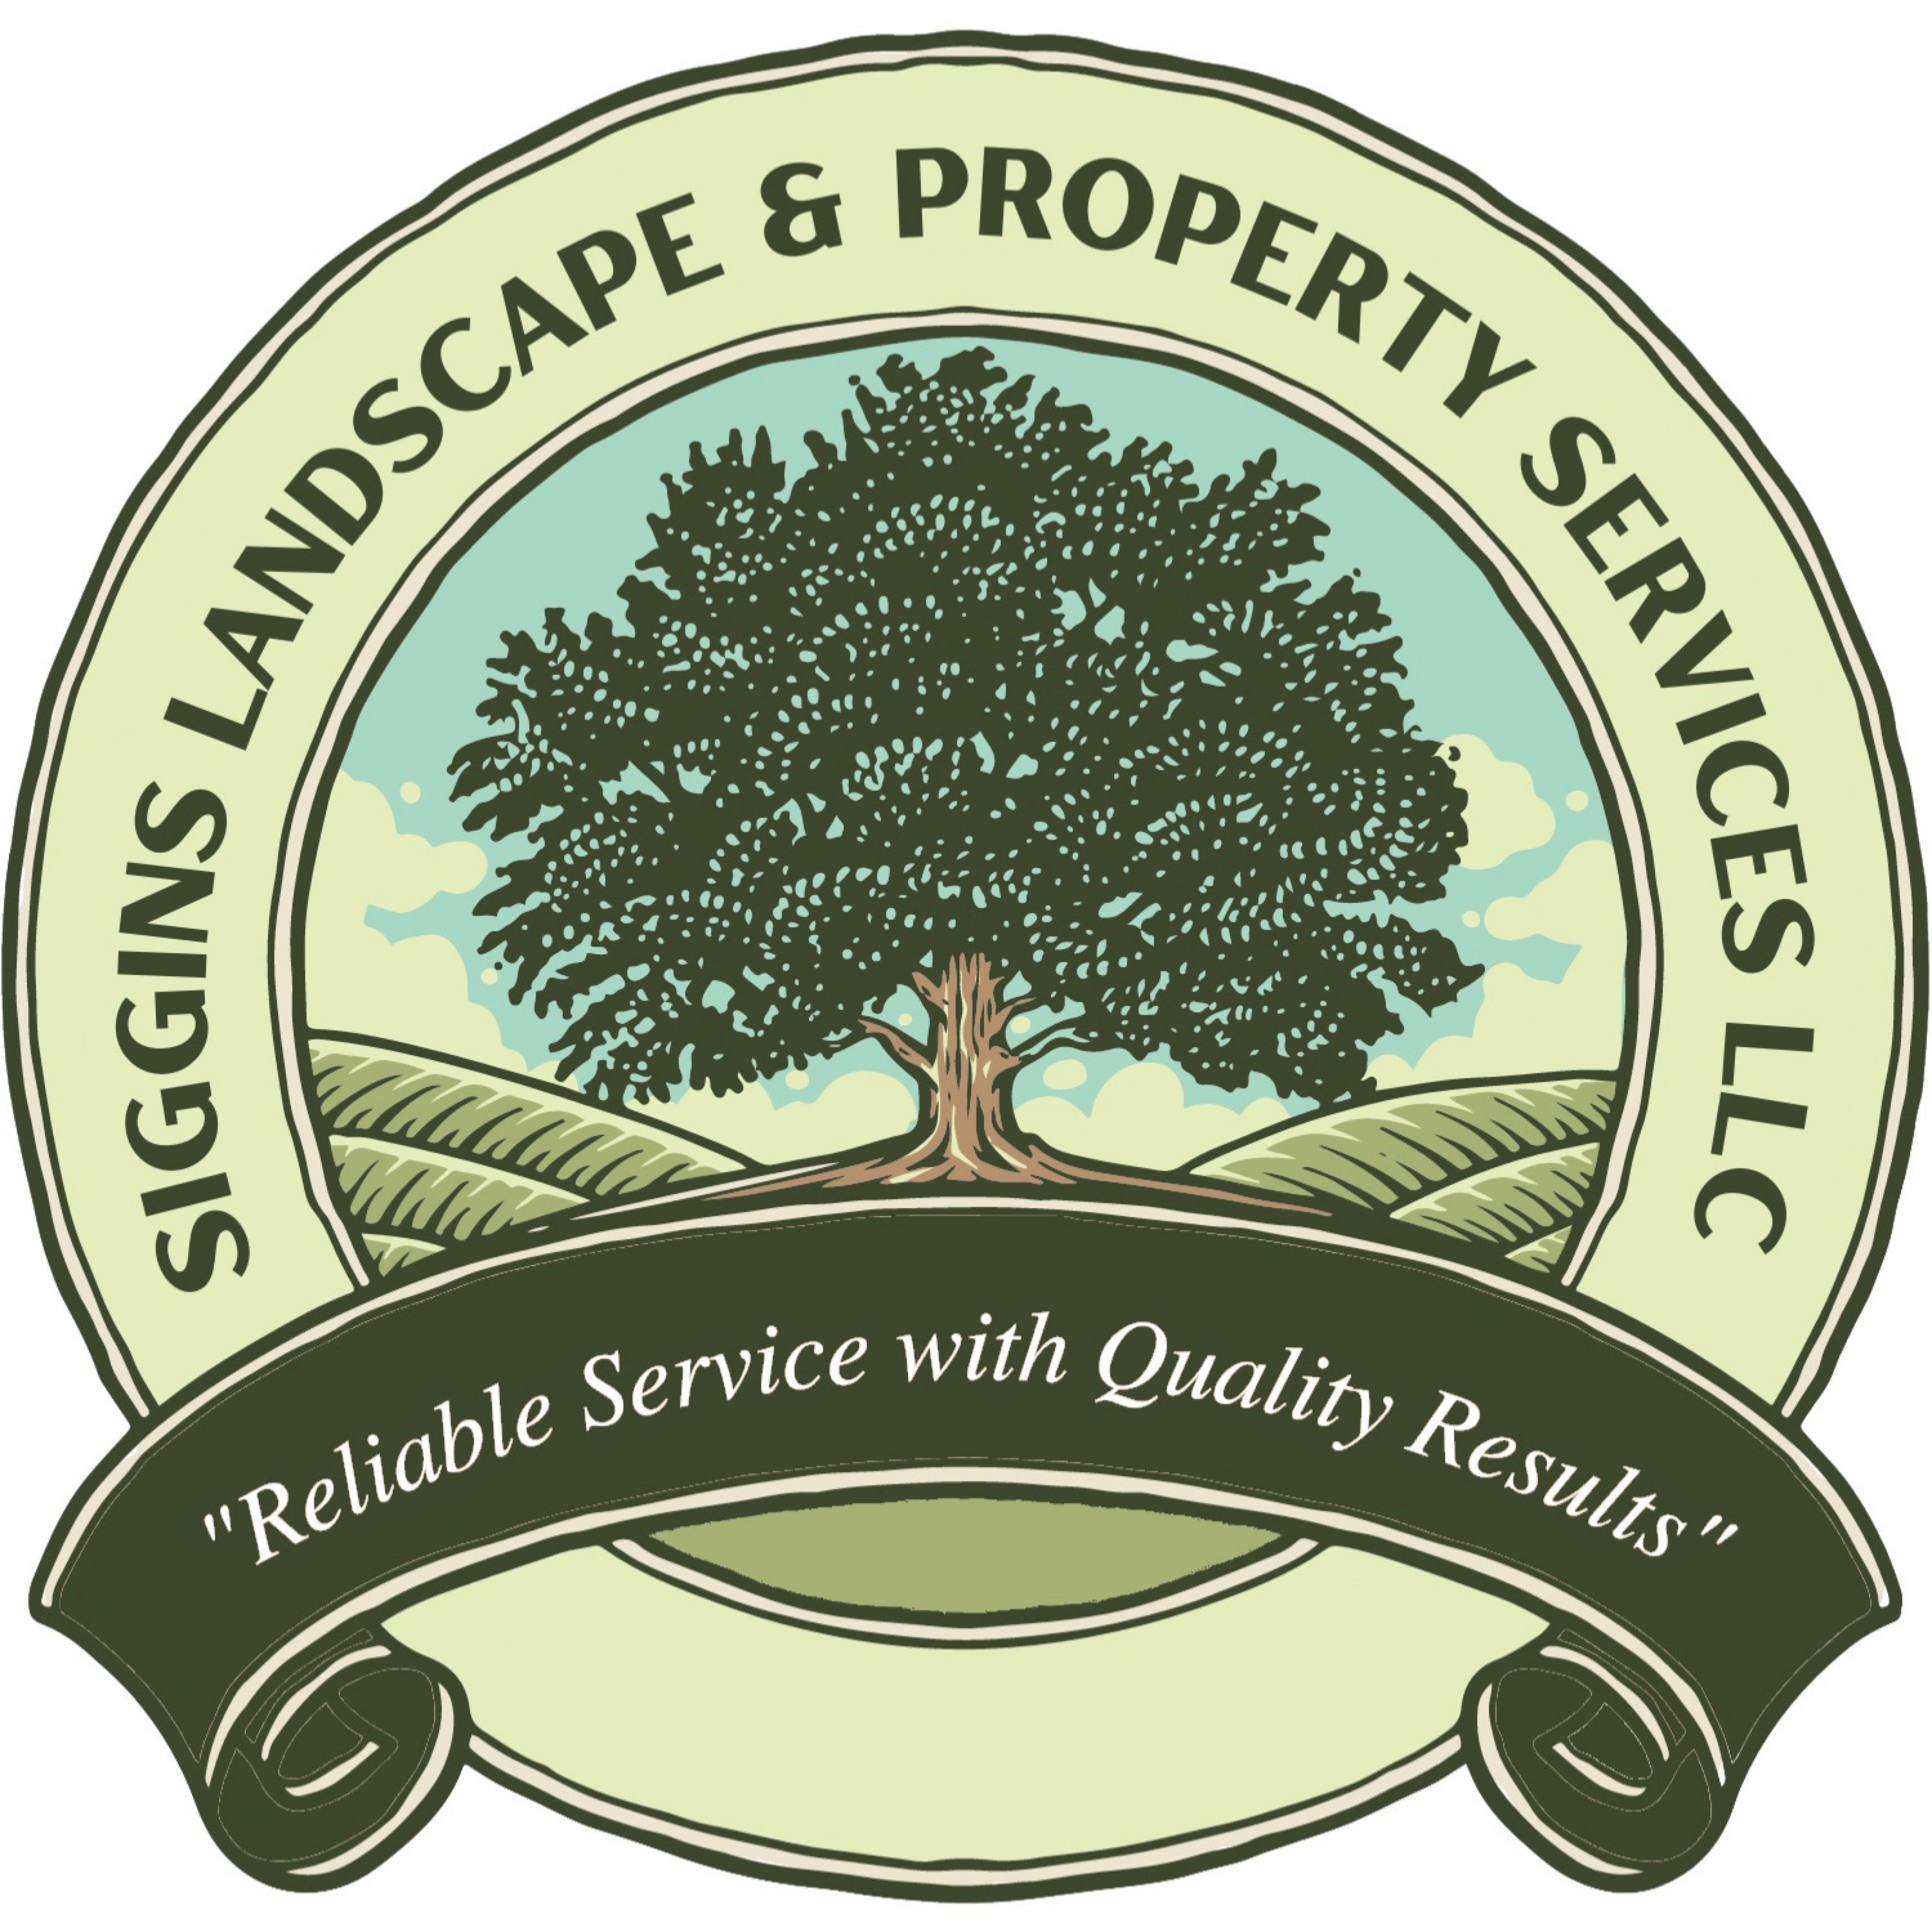 Siggins Landscape and Property Services Logo